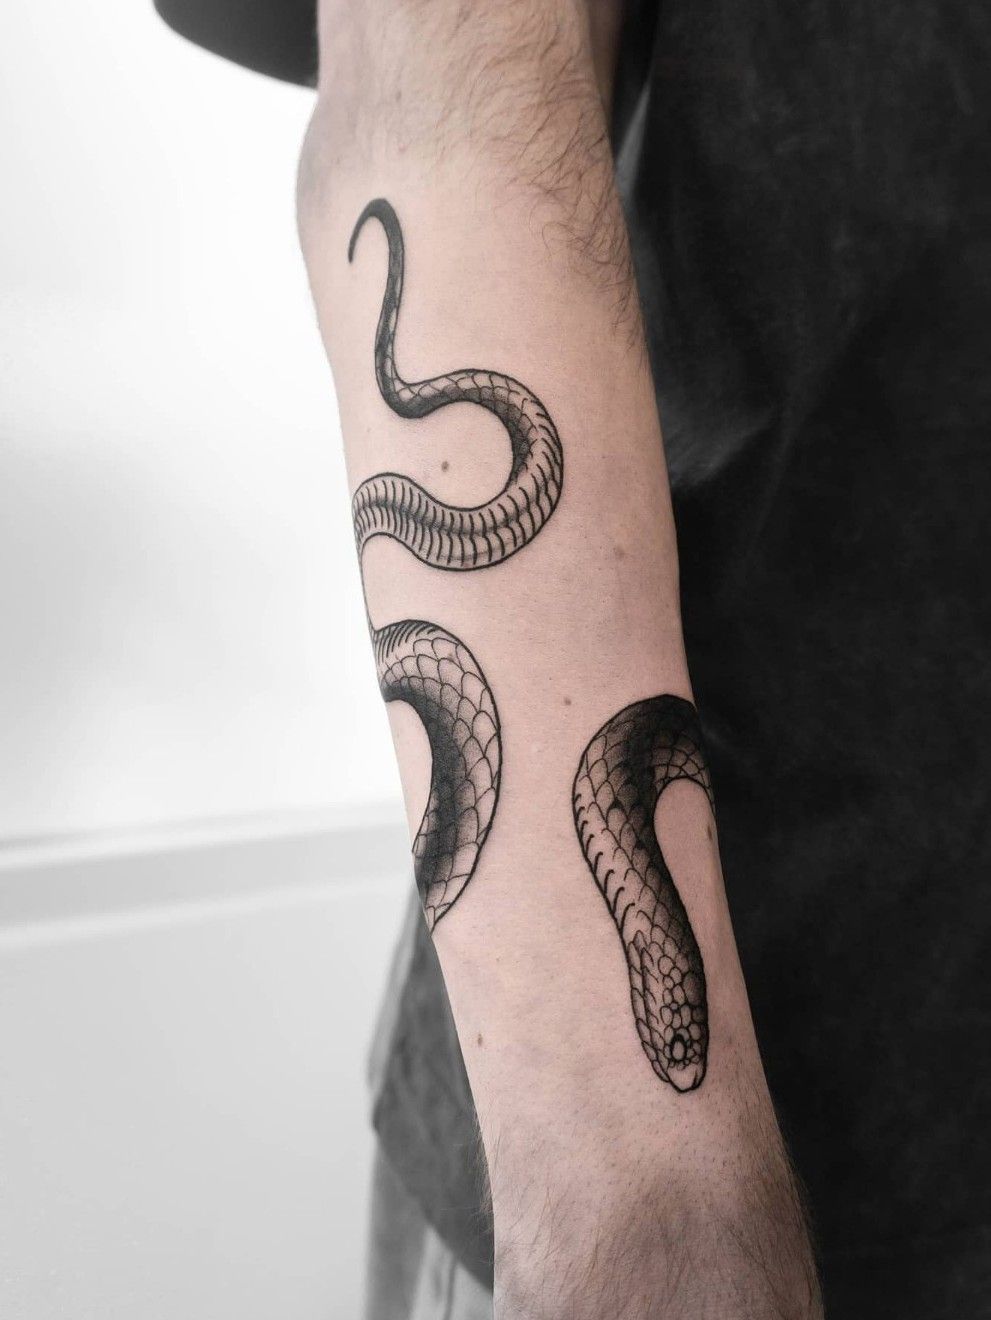 Temporary Tattoo Big Size Black Python Anaconda Snake Fake Arm Leg Neck  Body Art | eBay